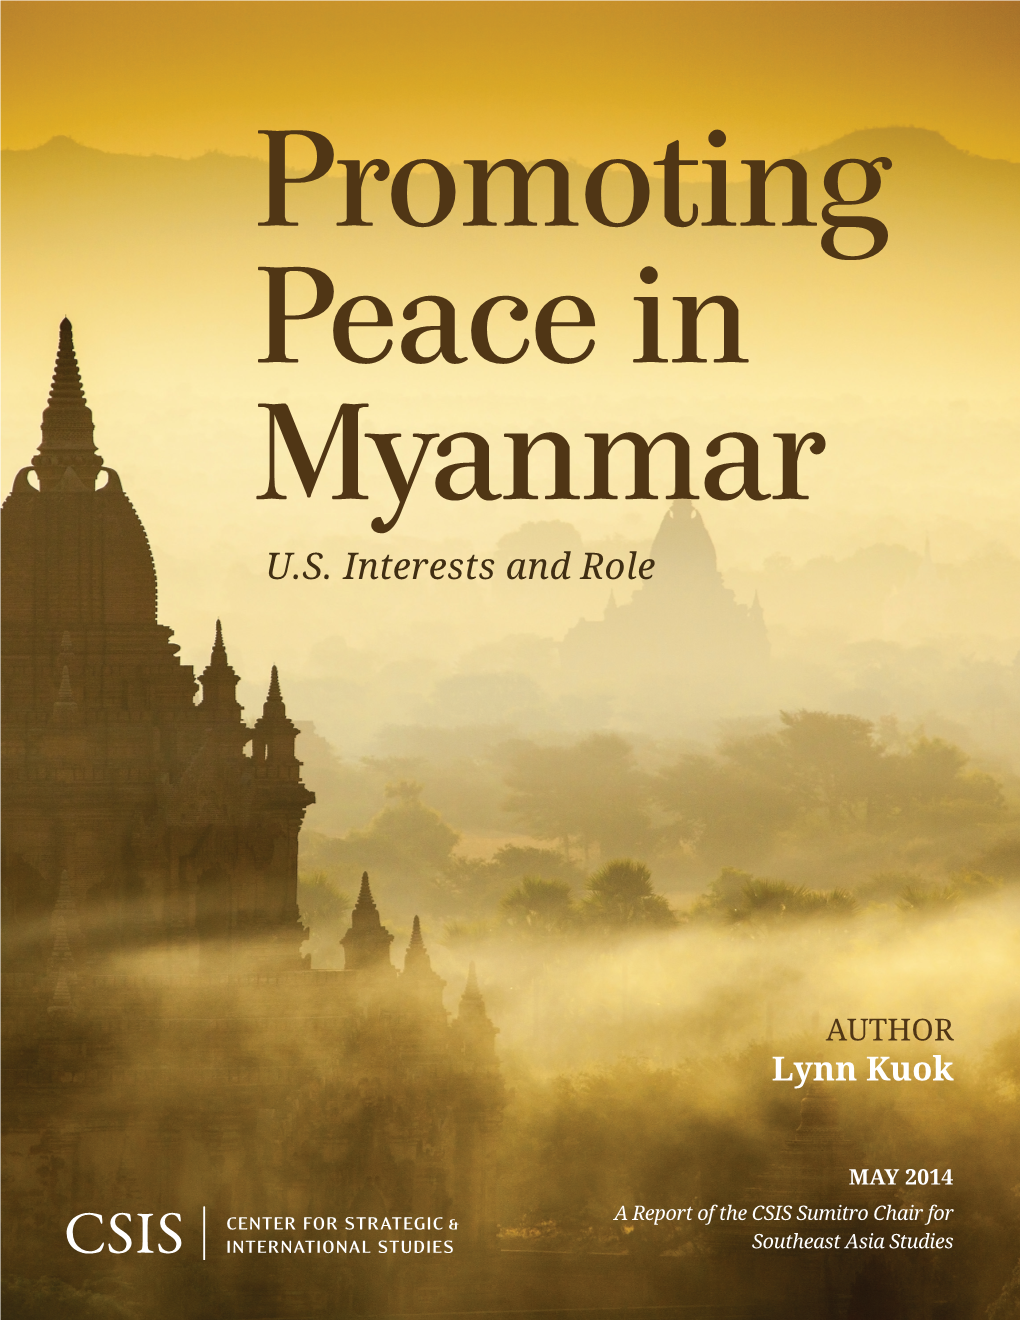 Promoting Peace in Myanmar U.S